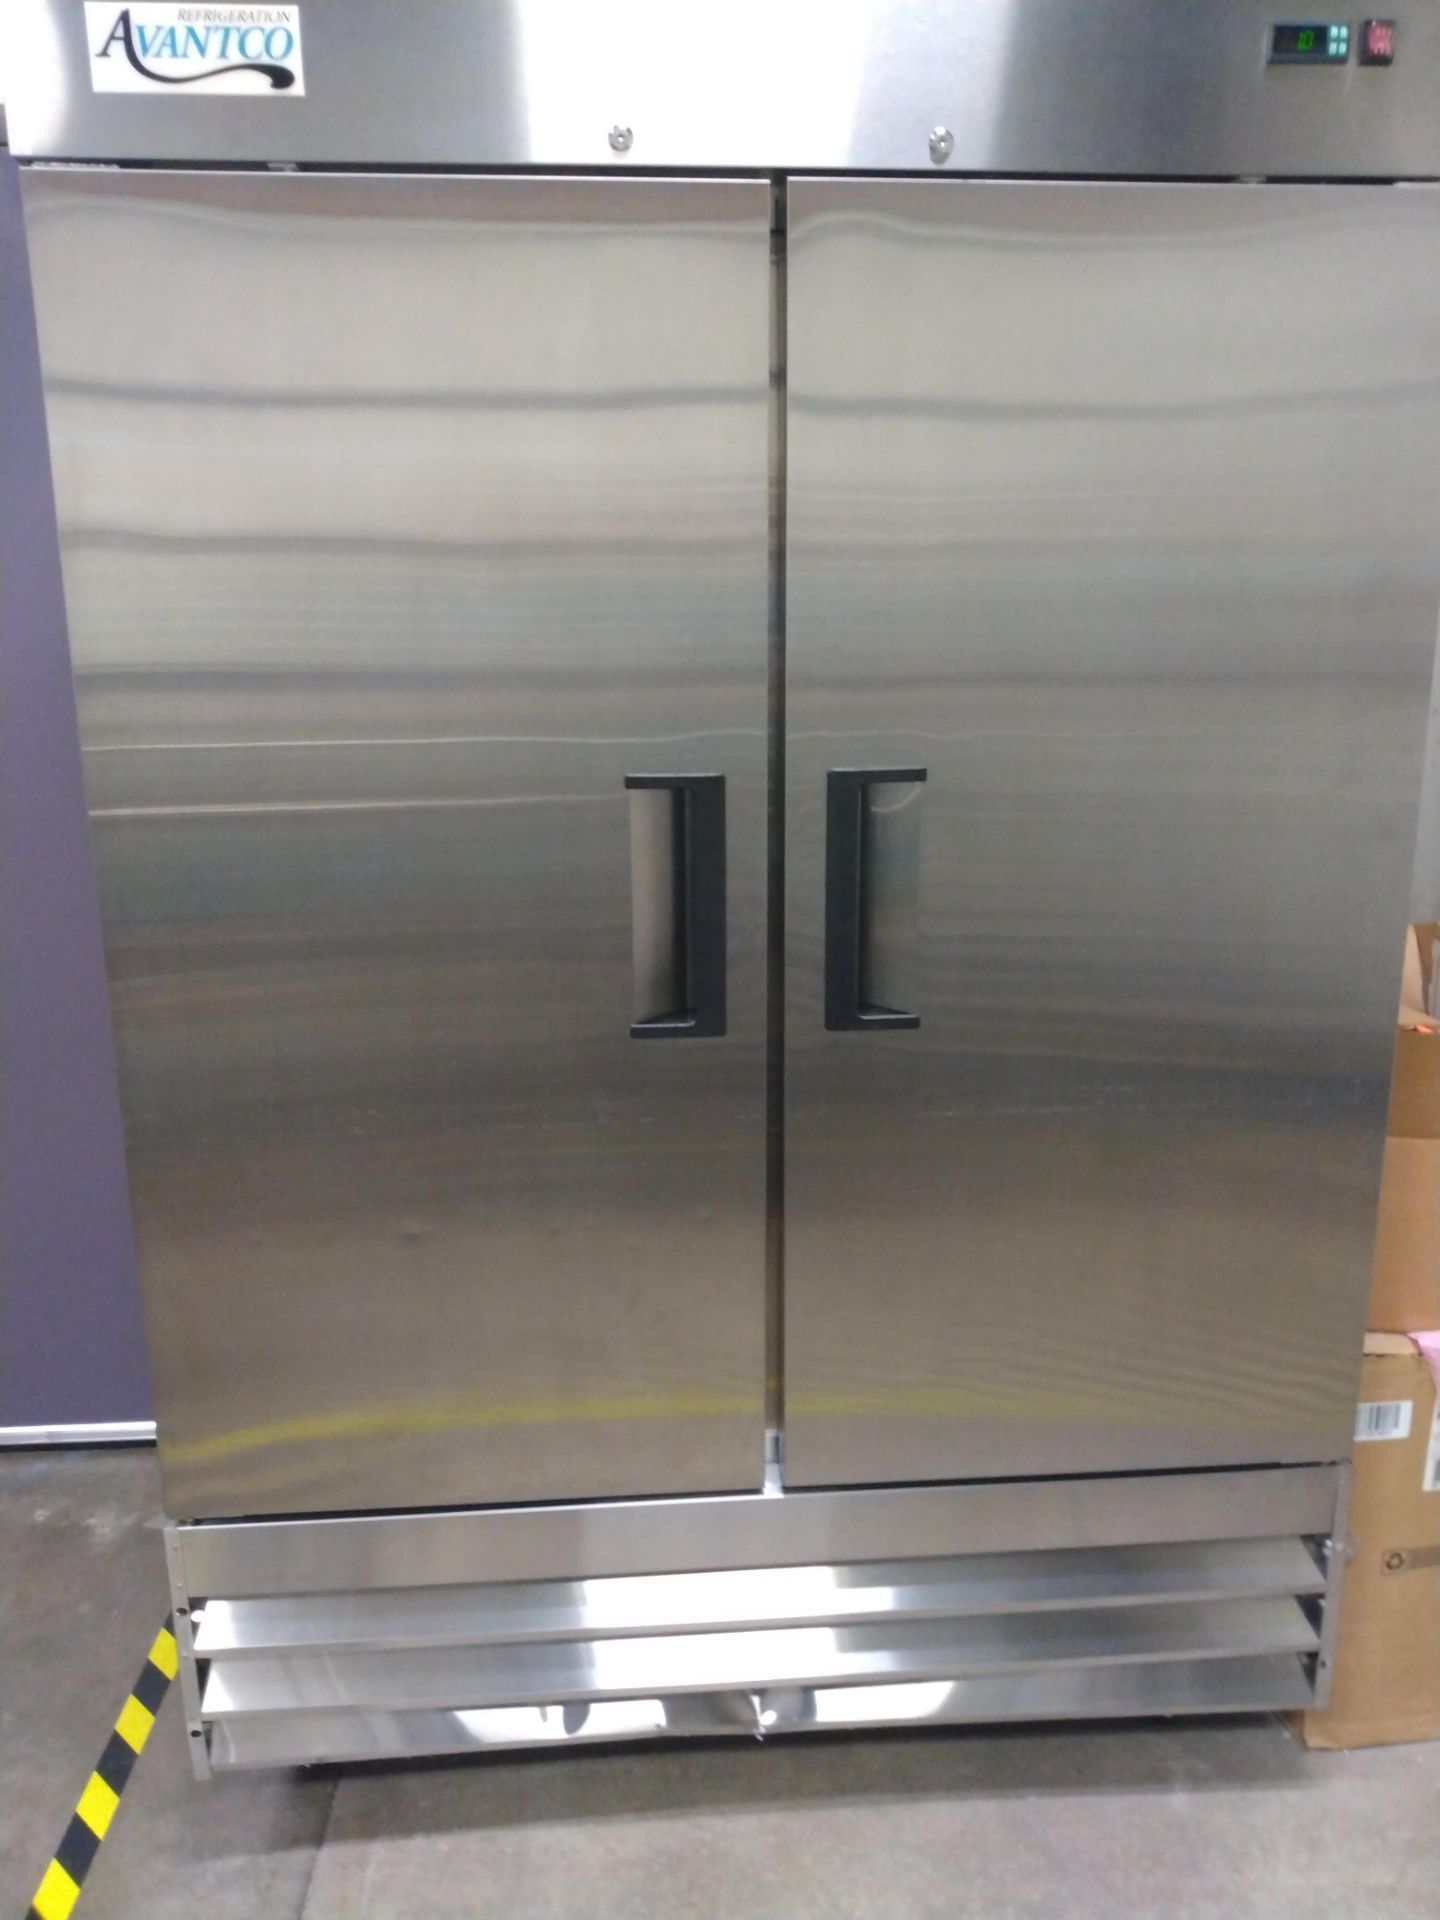 Avantco 178A49FHC 2-Door Reach-In Freezer. ~ Location: Trindad, CO, US ~ Rigging: $0.00 Rigging